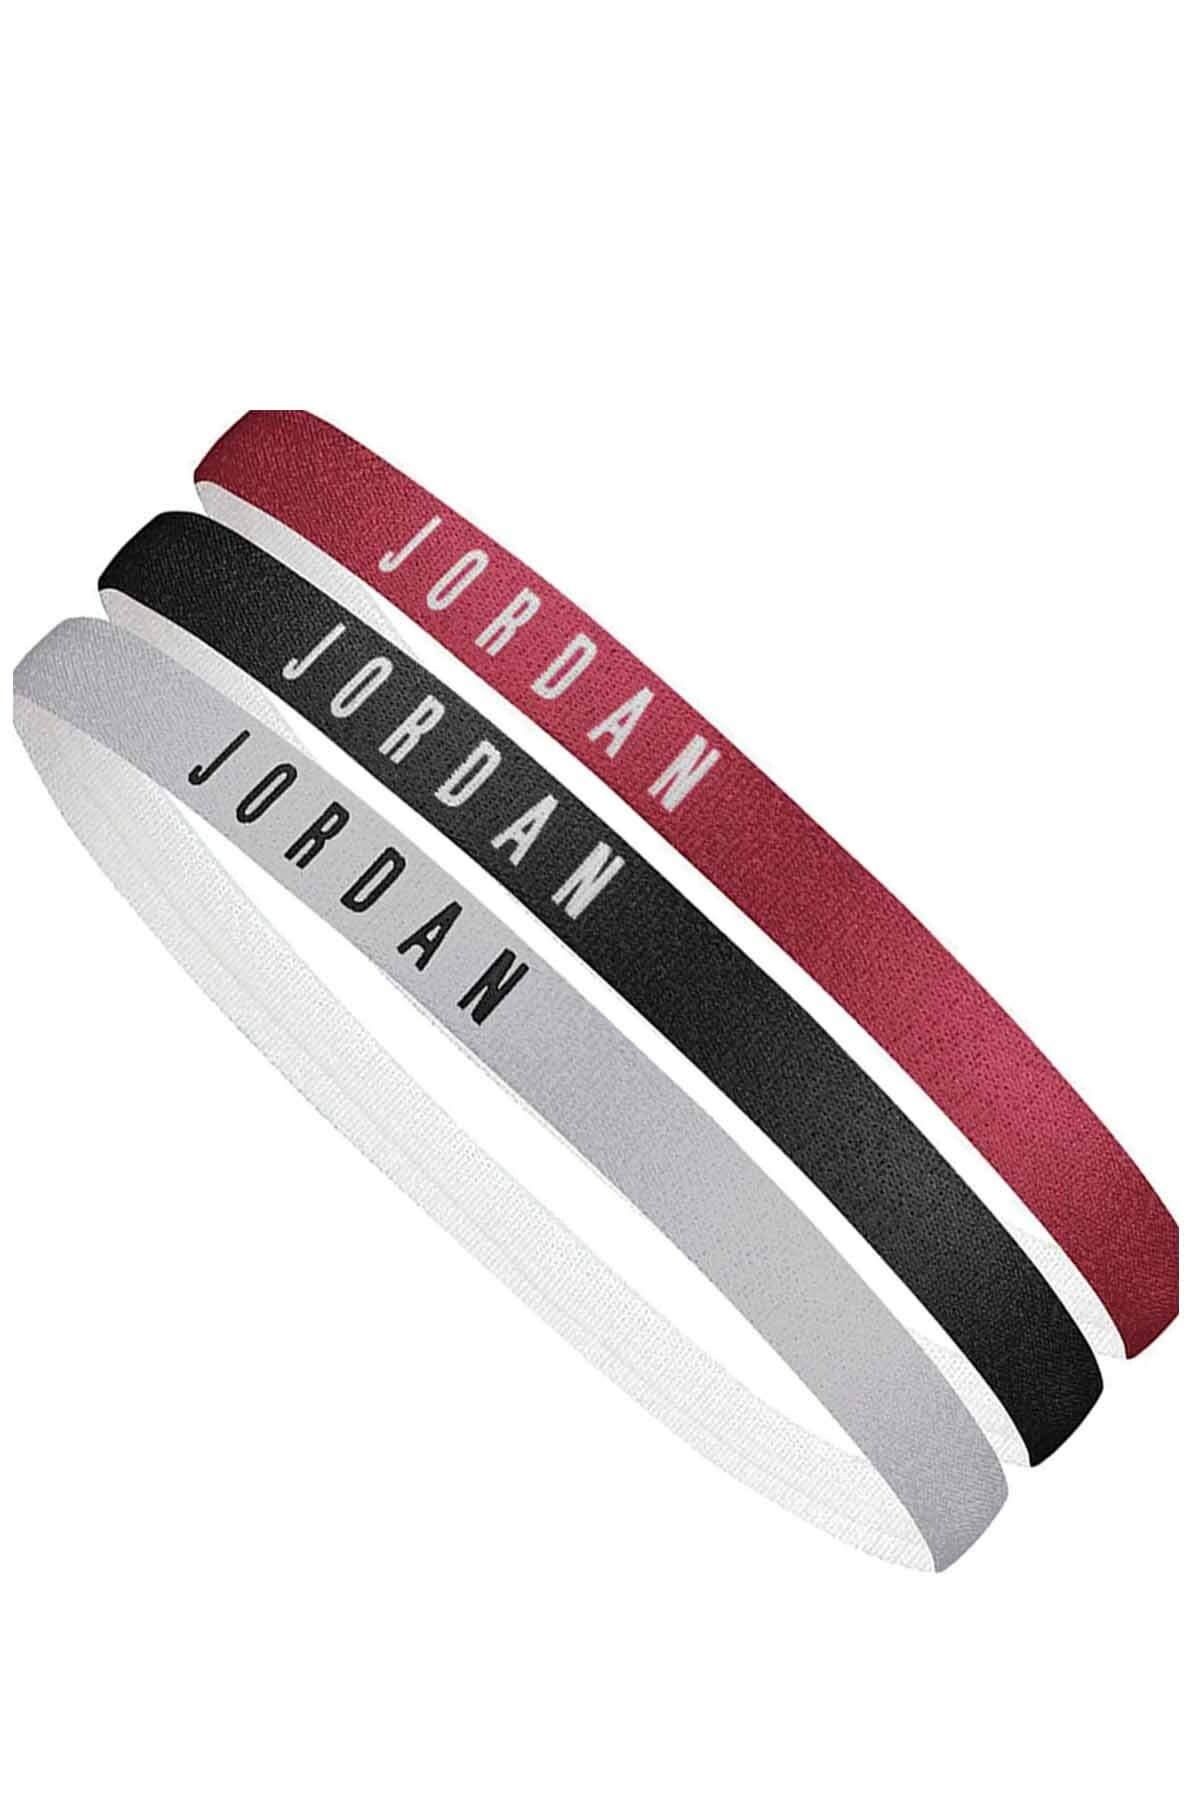 Nike Jordan Headbands 3 Pk Unisex Saç Bandı J.000.3599.626.os-kırmsyhgri